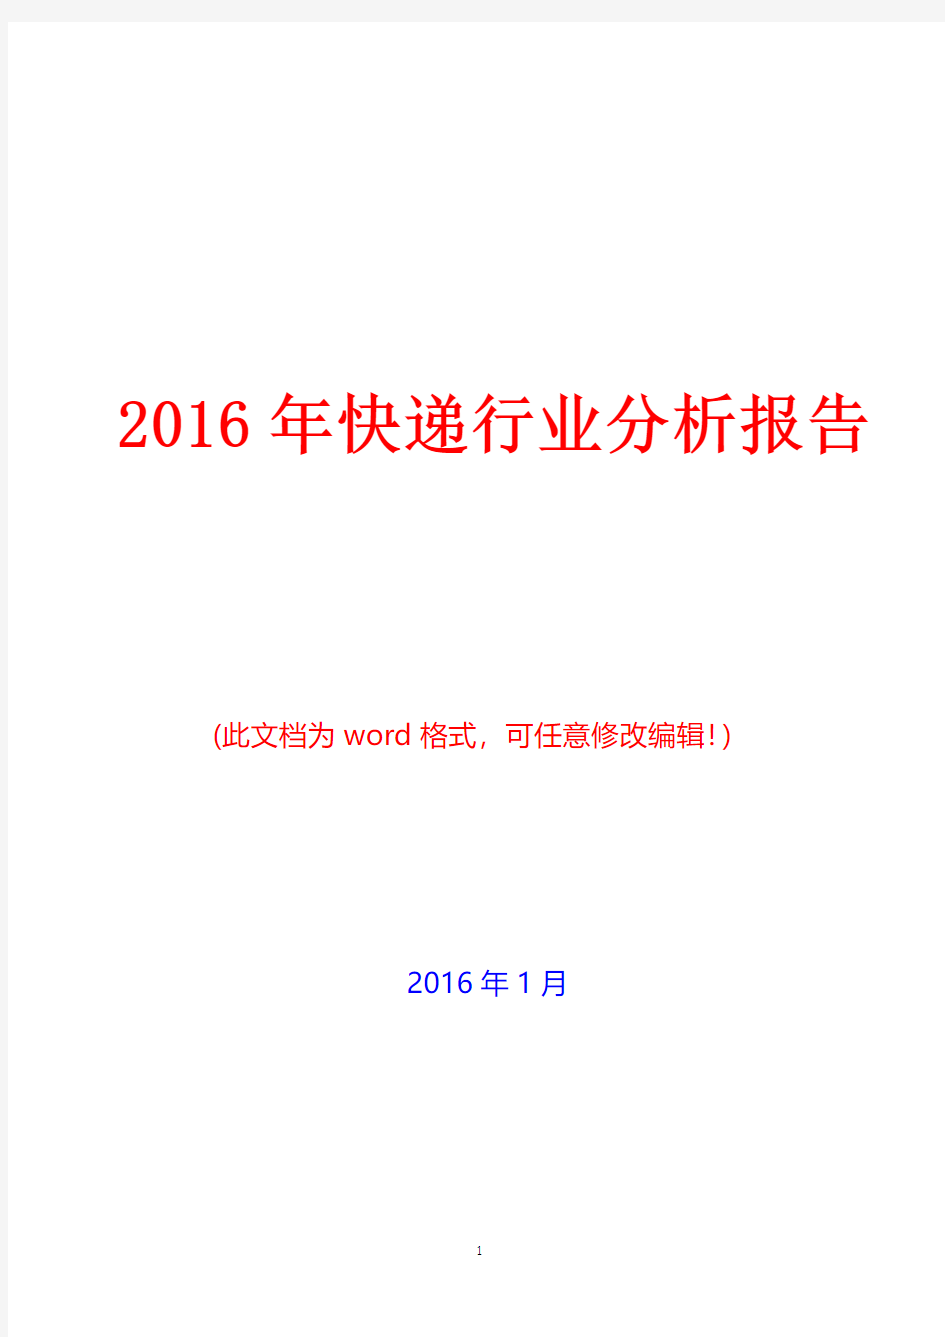 2016年快递行业分析报告(经典版)